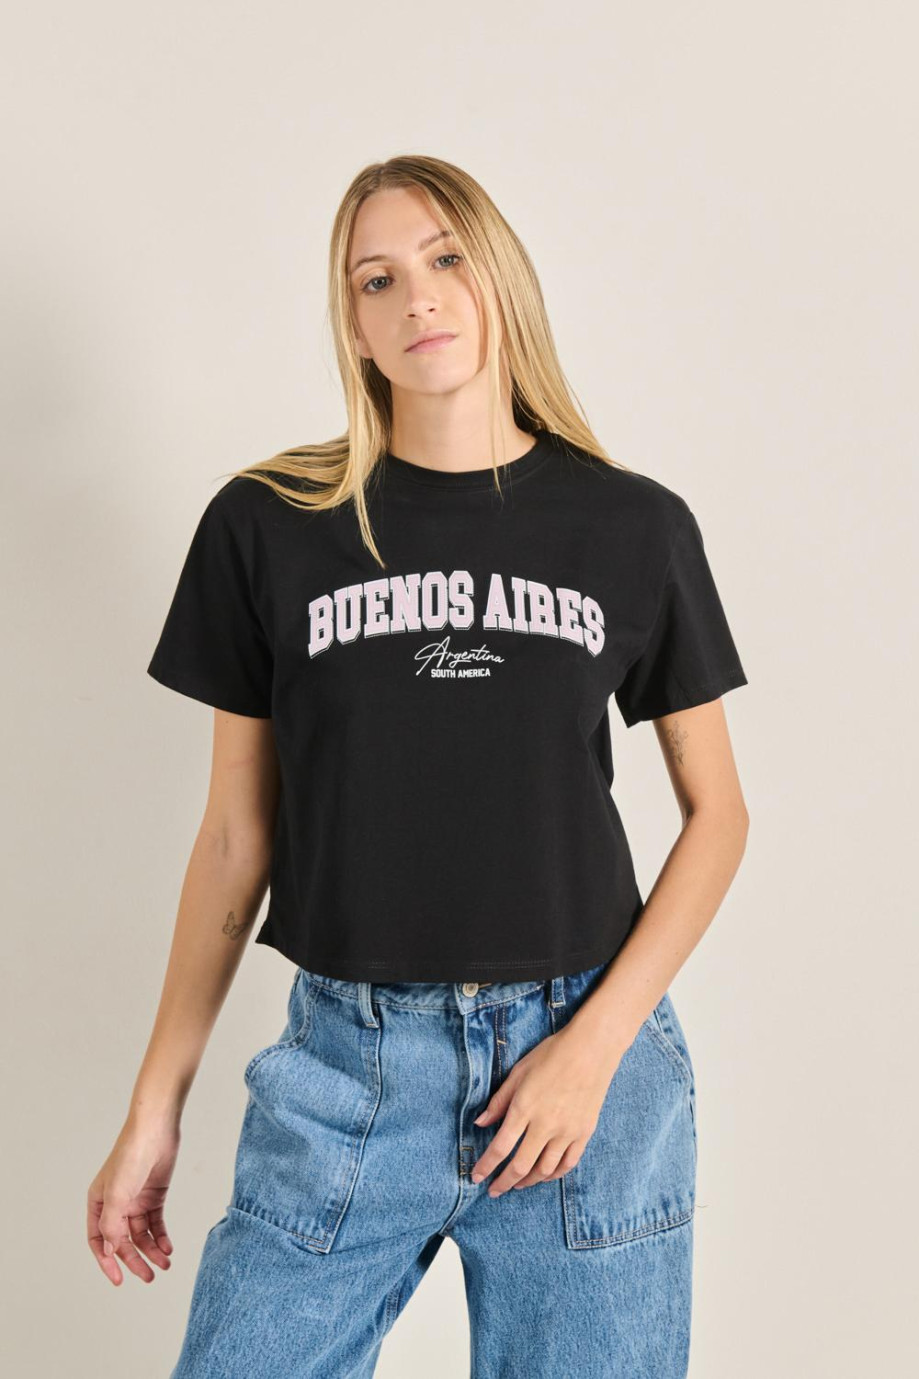 Camiseta unicolor crop top con diseño college de Buenos Aires